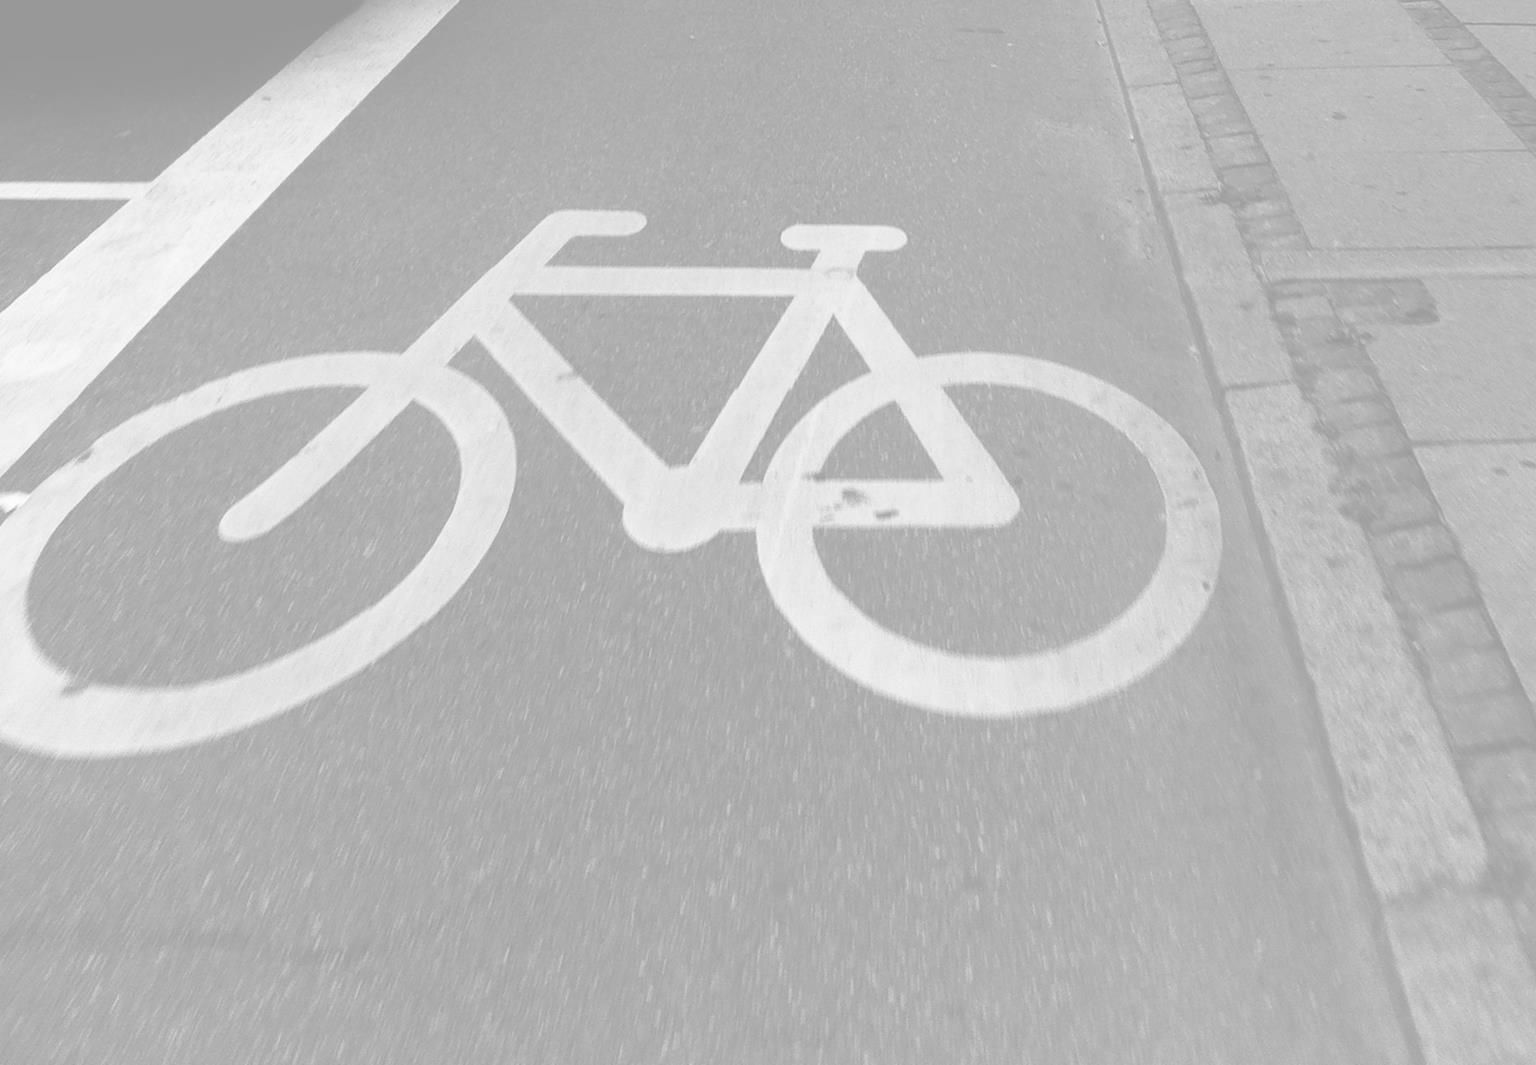 Kohti pyöräilykaupunkia Laadukas pyöräliikenteen väylästö ei synny autoliikenteen suunnittelun sivutuotteena eikä pieniä täsmäpuutteita korjaamalla.